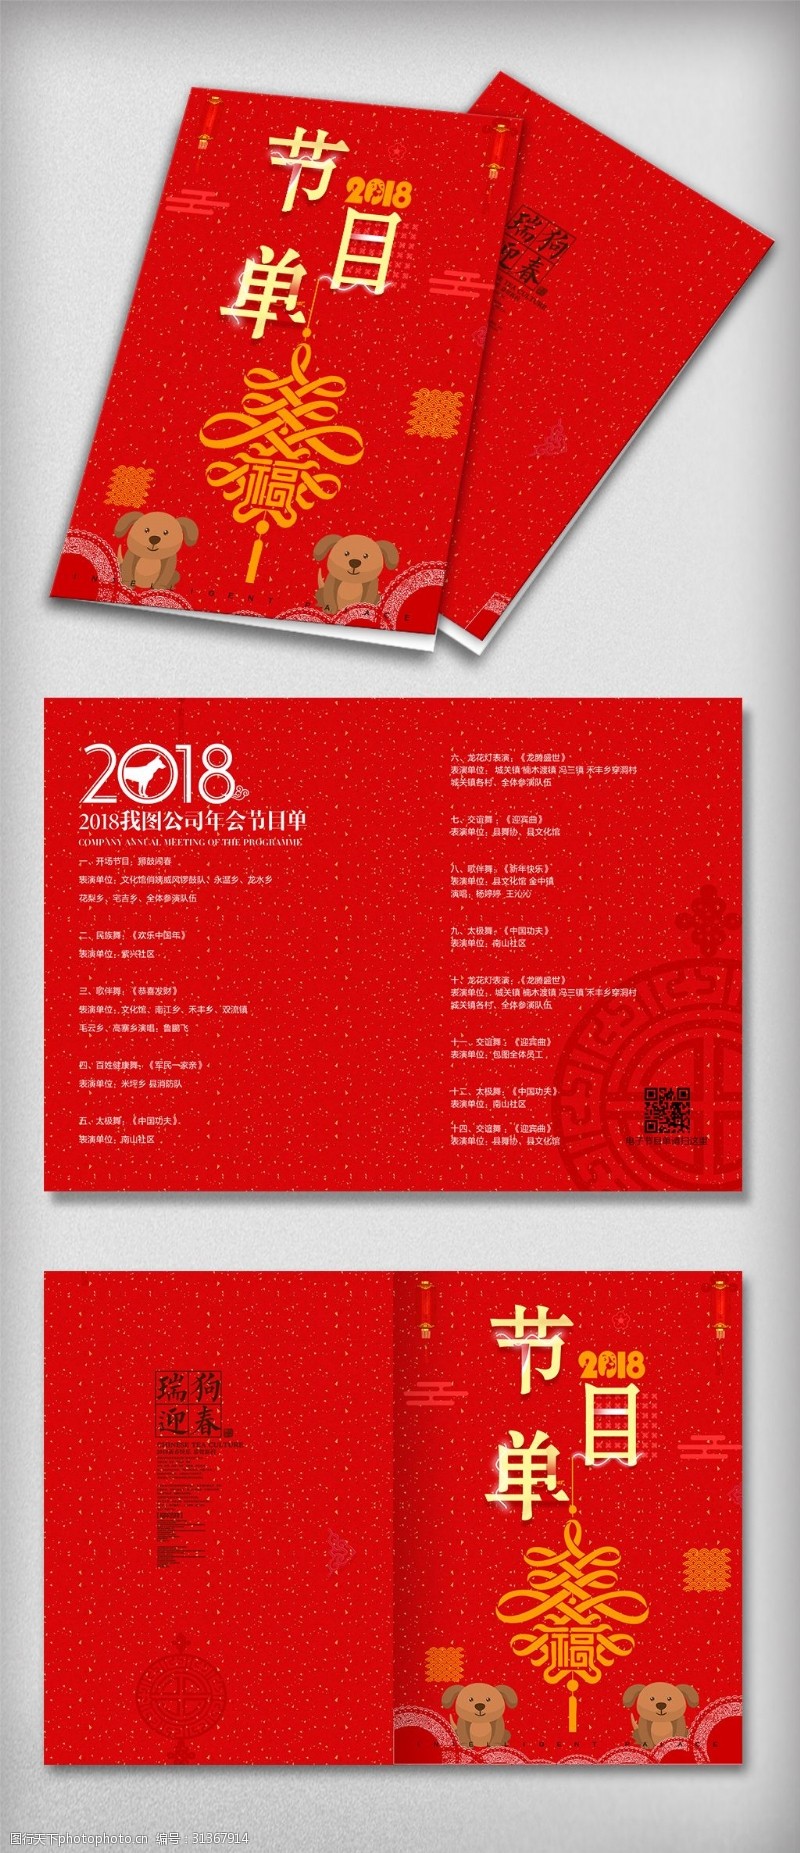 简约封面设计简约时尚2018狗年晚会节目单宣传设计